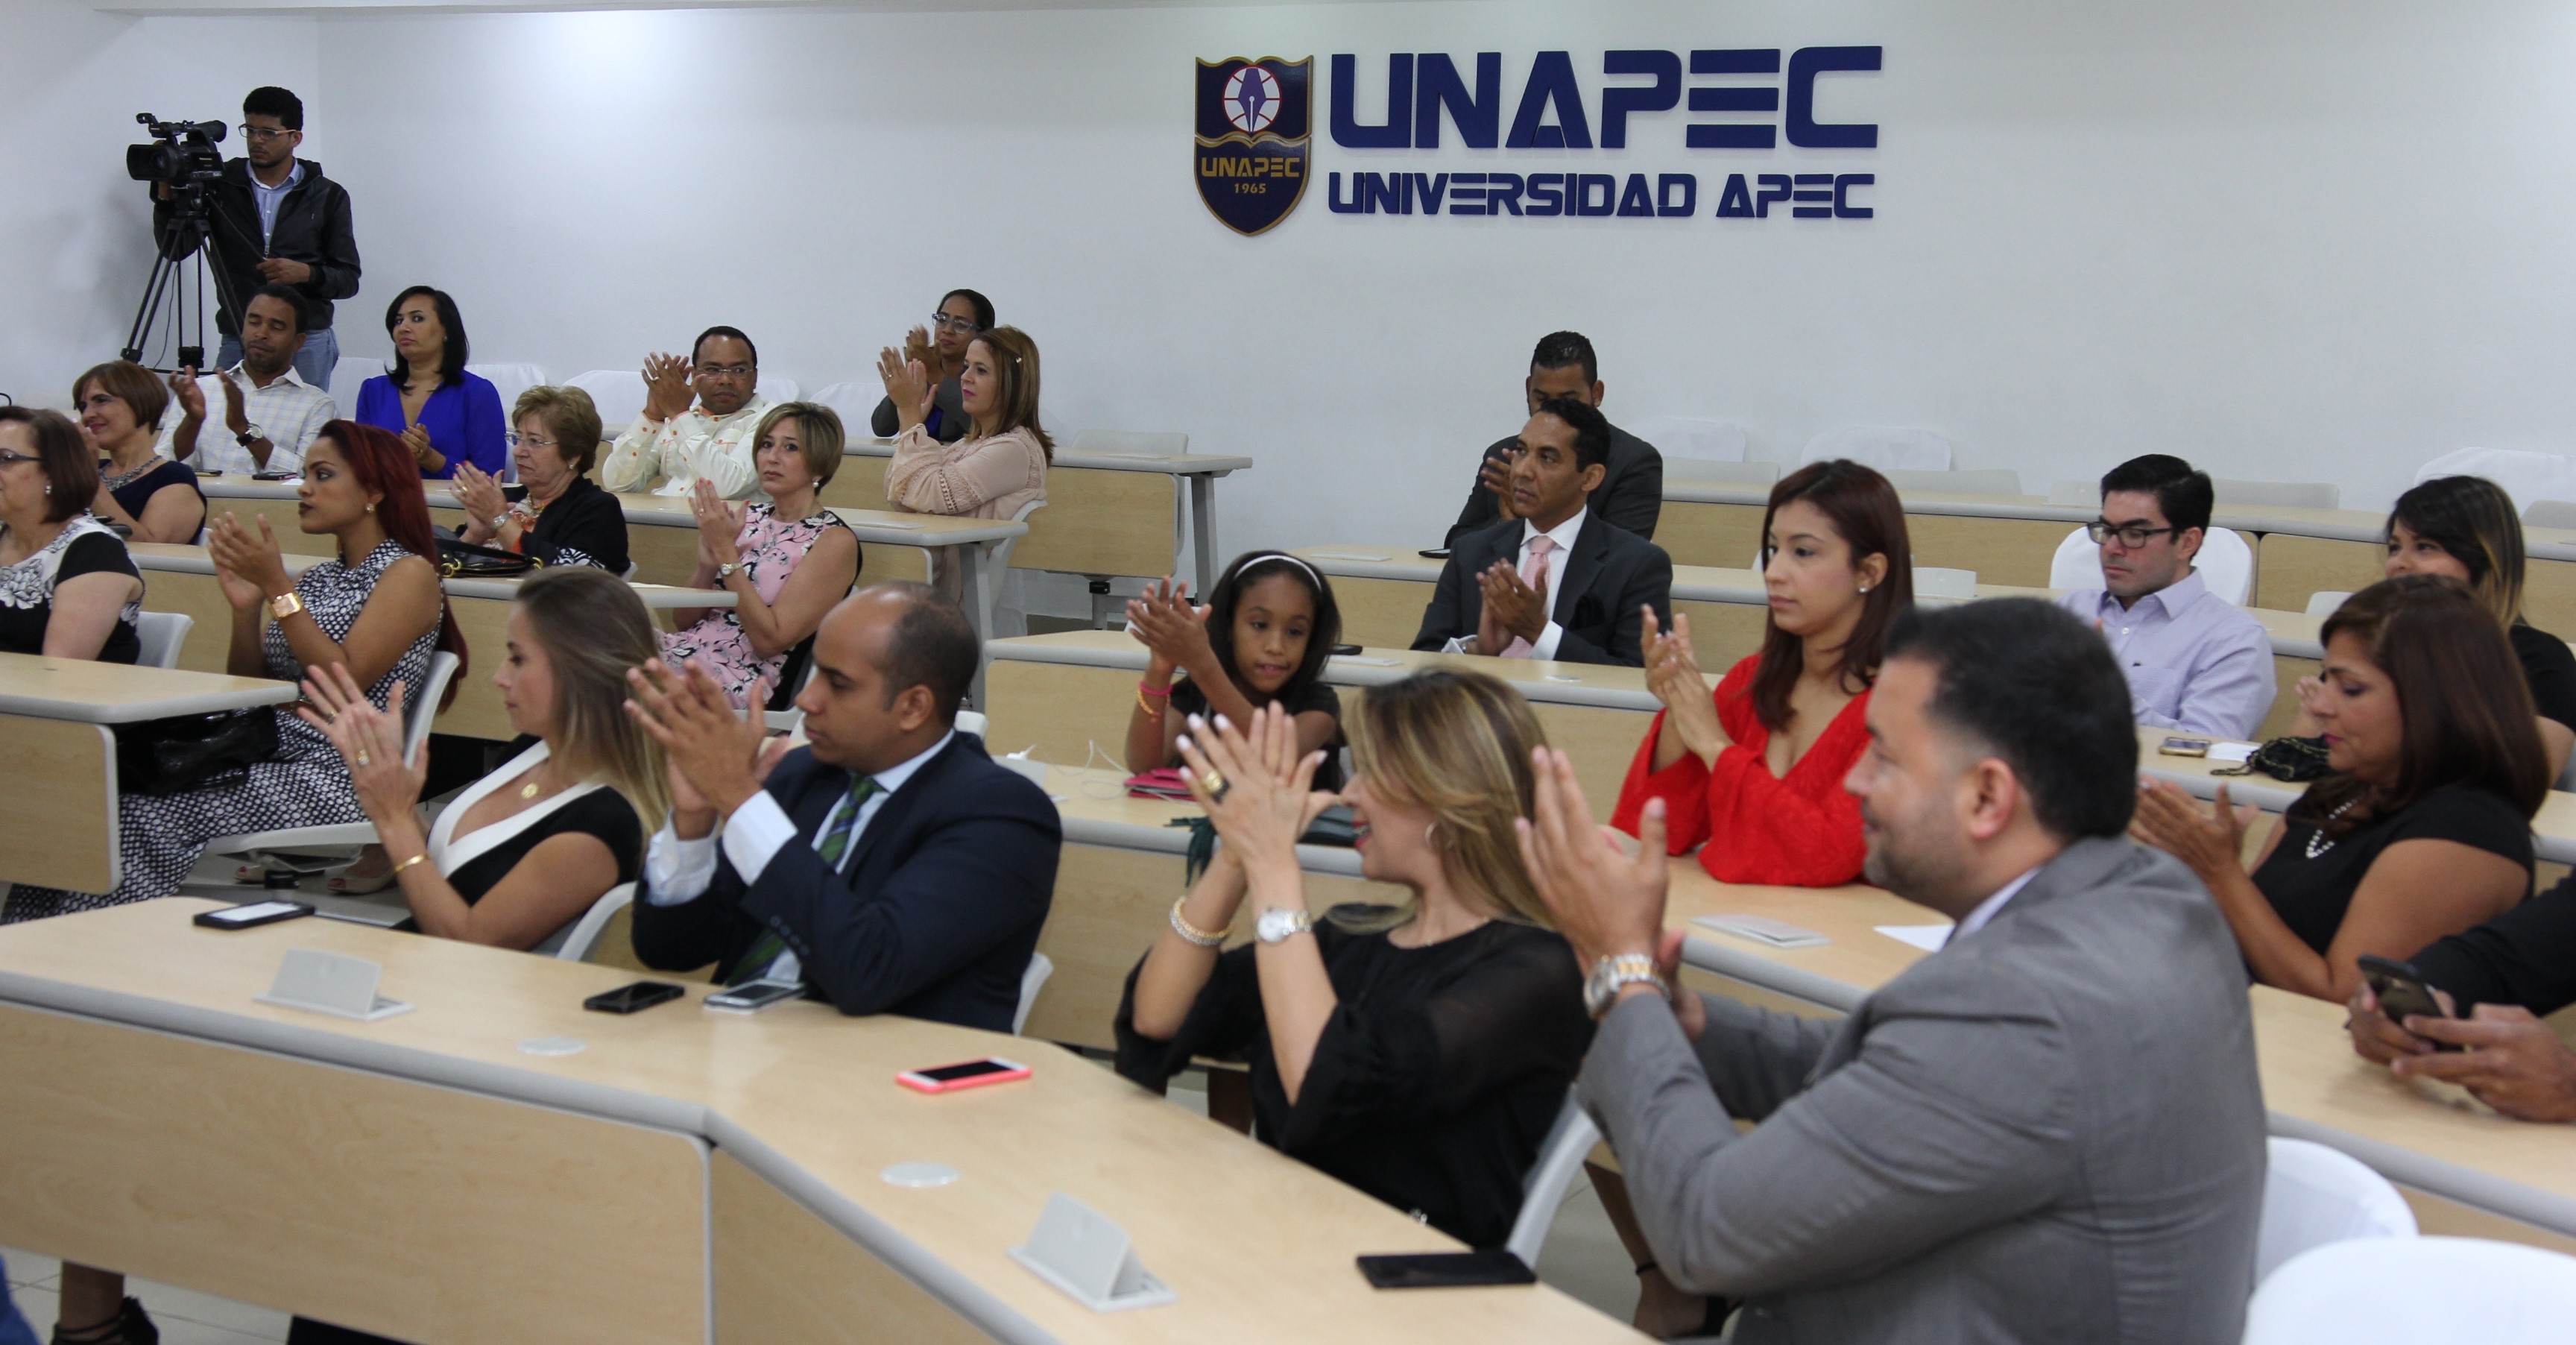 La clausura fue realizada en el Salón de Conferencias de UNAPEC.